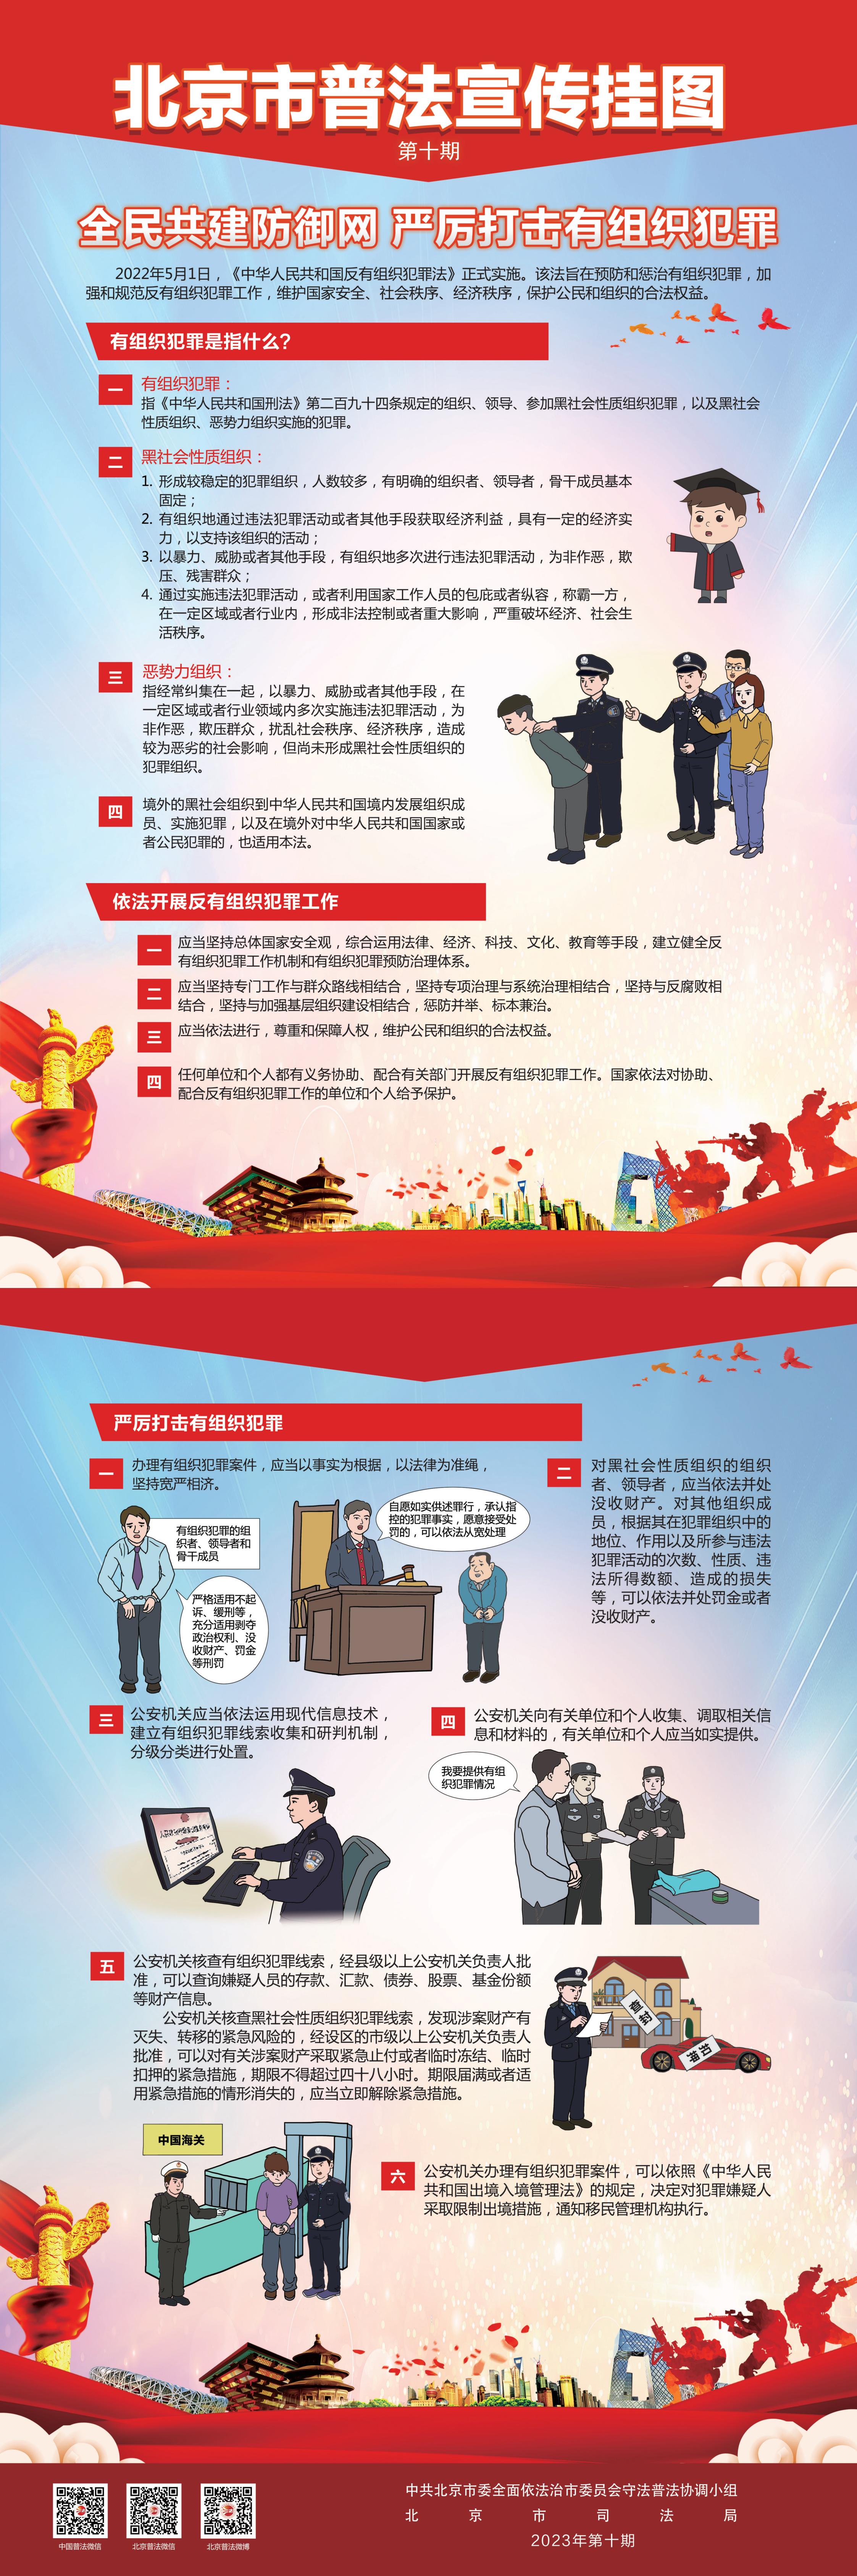 北京市普法宣传挂图第十期